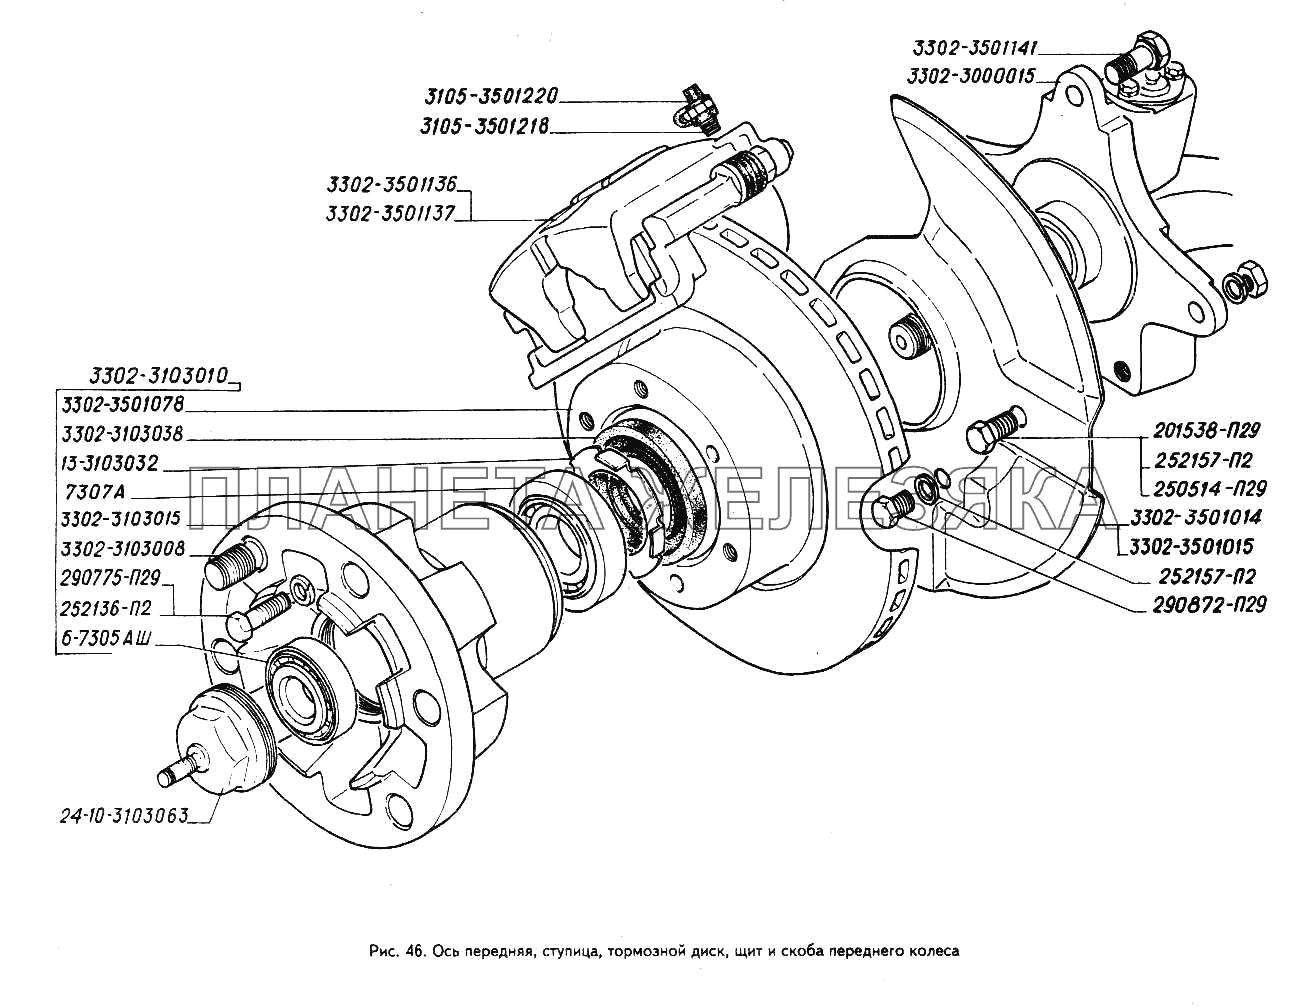 Ступица, тормозной диск, щит и скоба переднего колеса, ось передняя ГАЗ-3302 (ГАЗель)